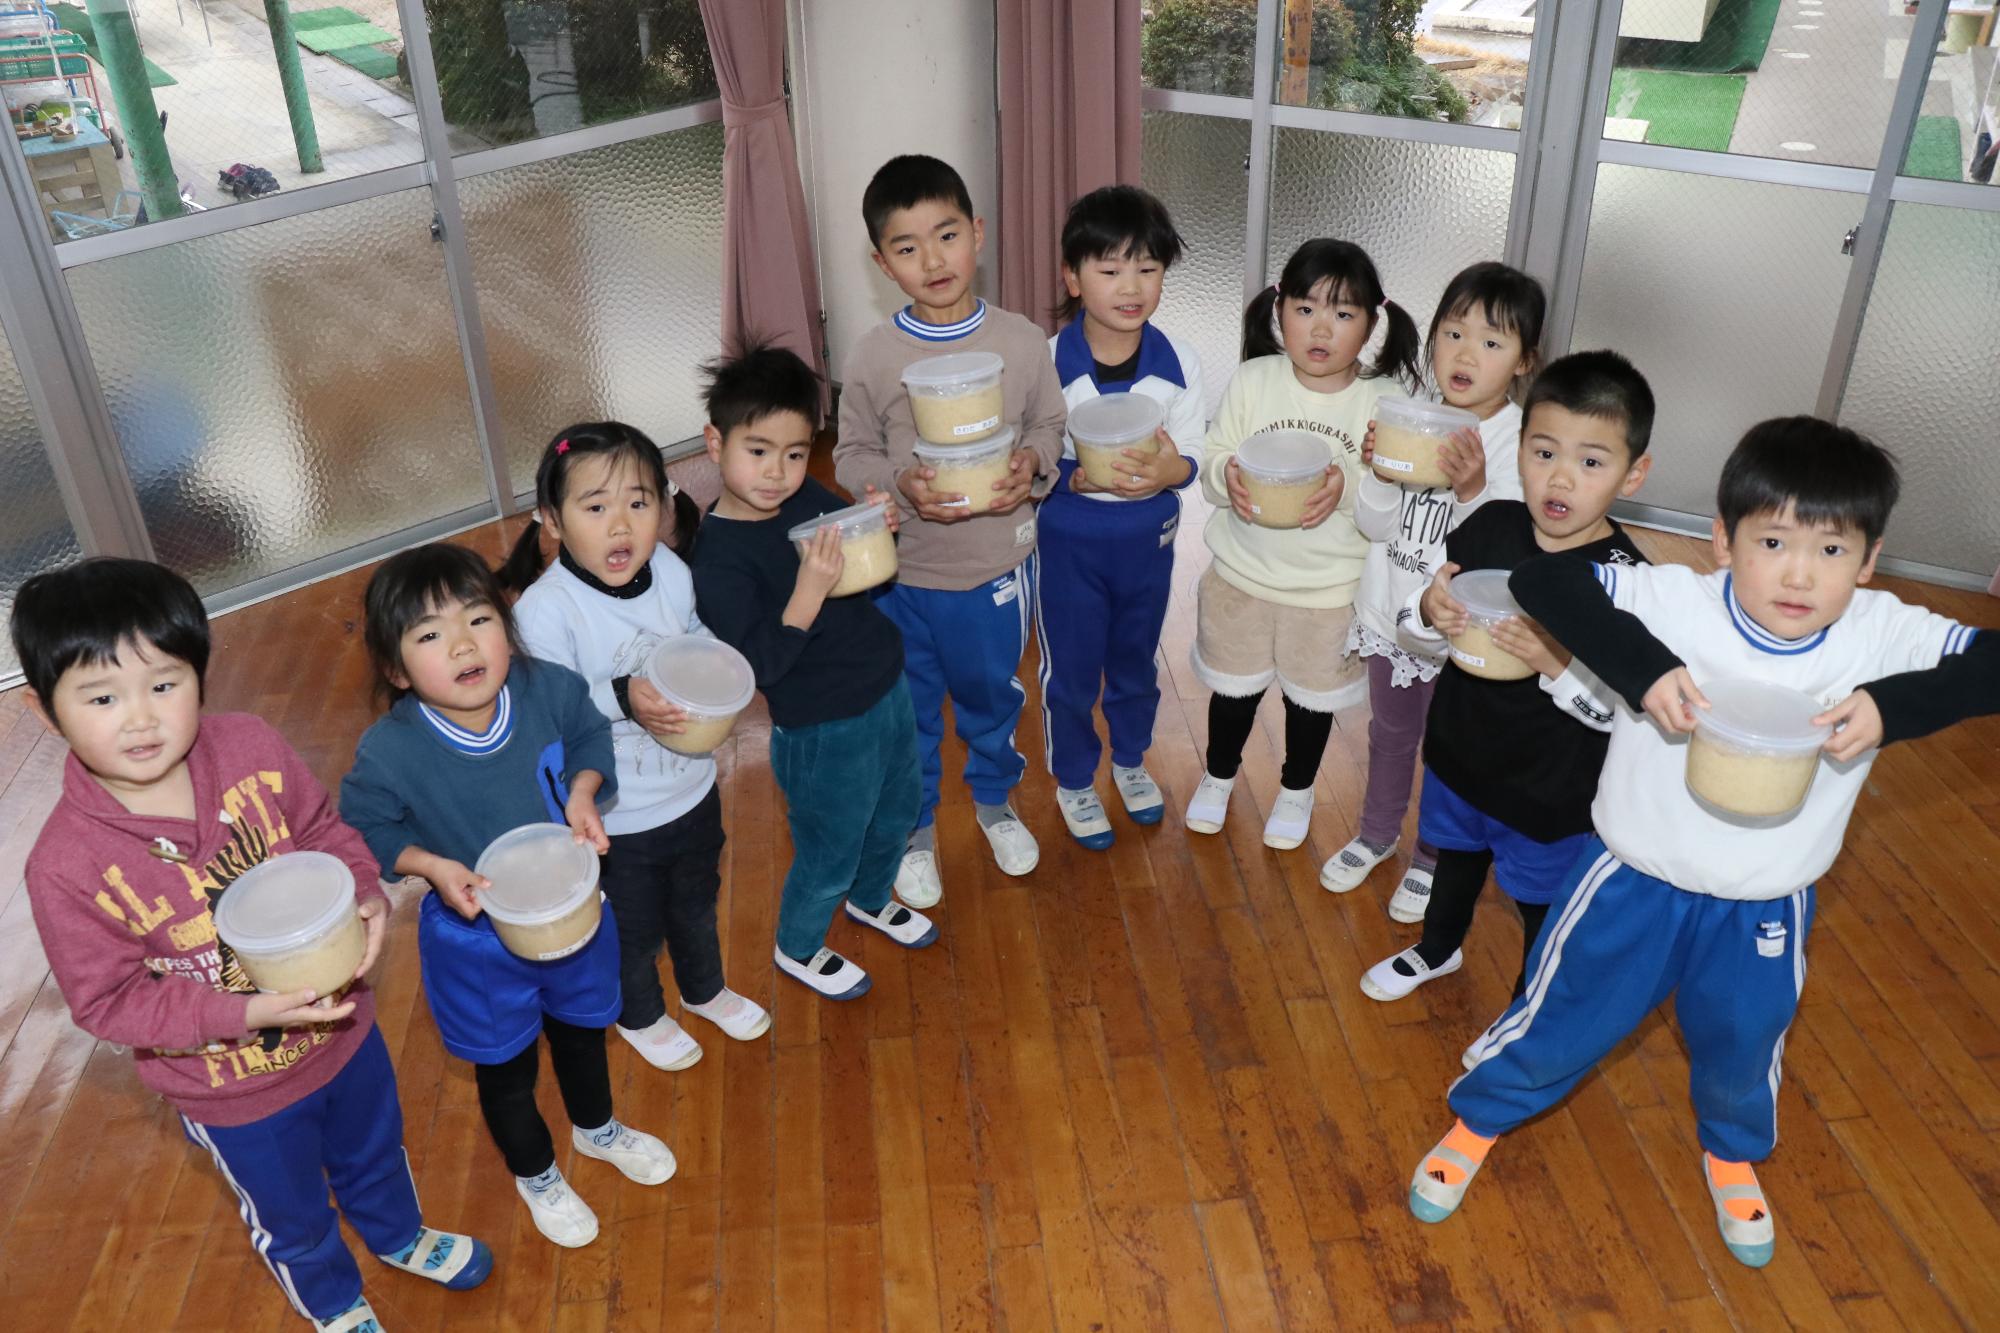 河東幼稚園で仕込み終えたみそを手に持ち並んでいる園児らの写真